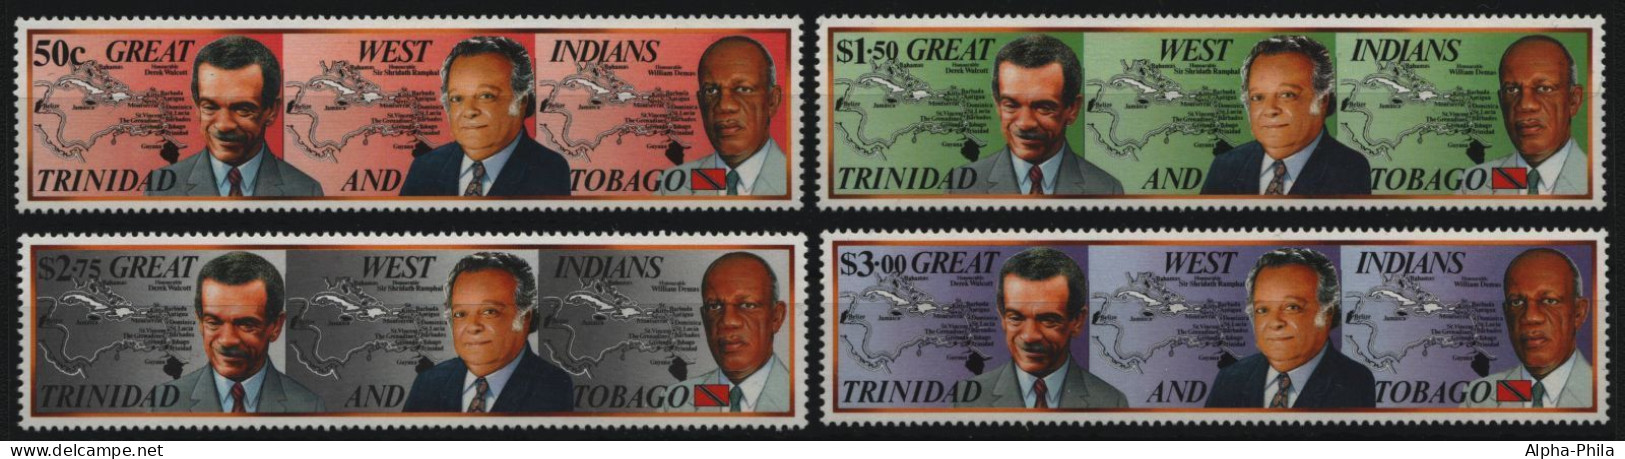 Trinidad & Tobago 1994 - Mi-Nr. 645-648 ** - MNH - CARICOM - Trinidad & Tobago (1962-...)